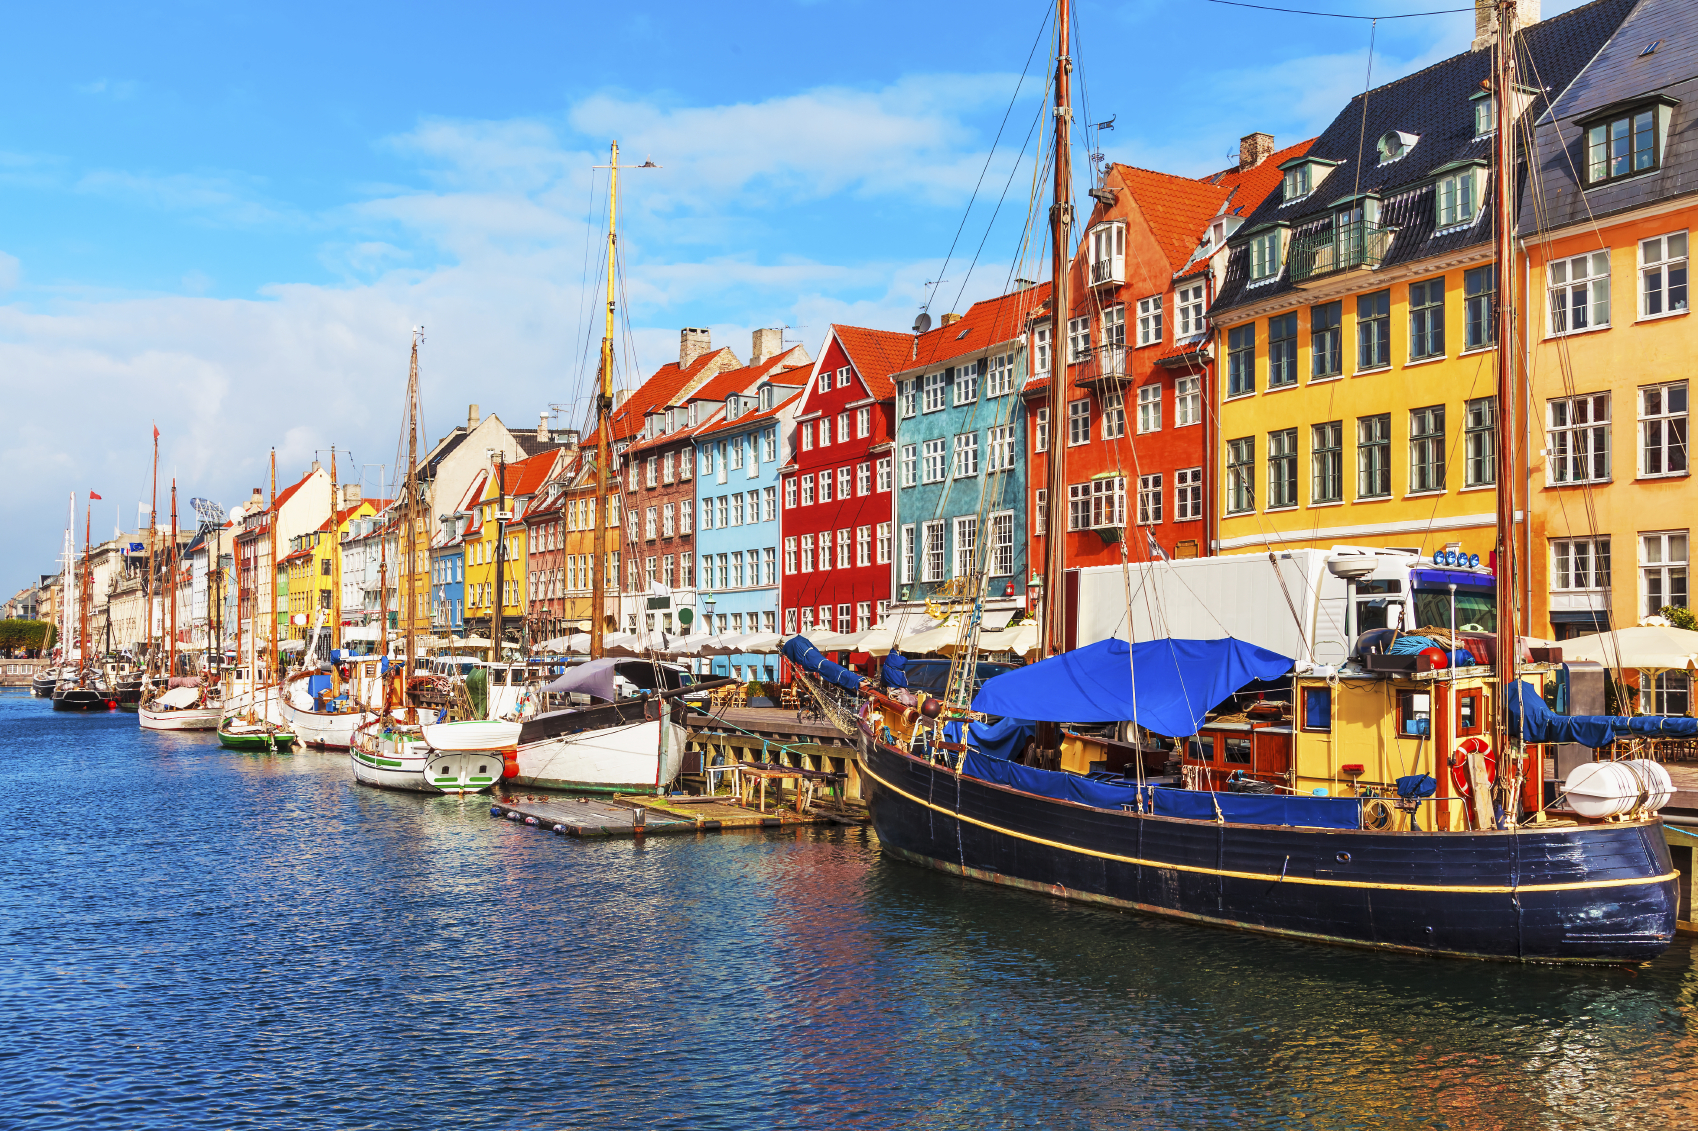 Nyhavn pier in the Old Town of Copenhagen